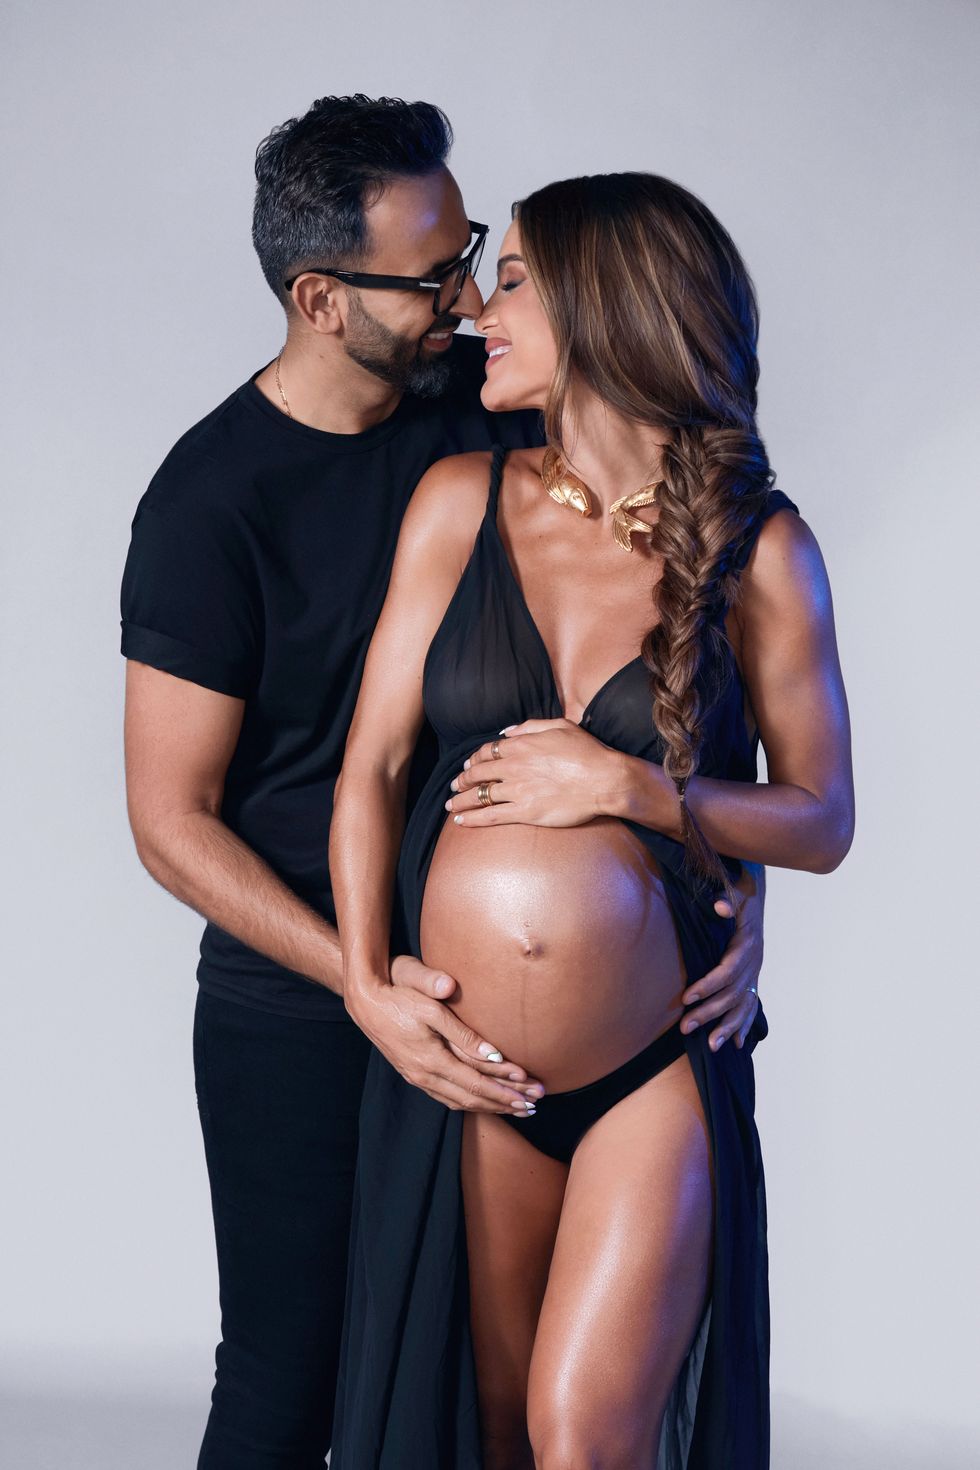 Camila Coelho Announces She's 23 Weeks Pregnant: 'Dreams Do Come True